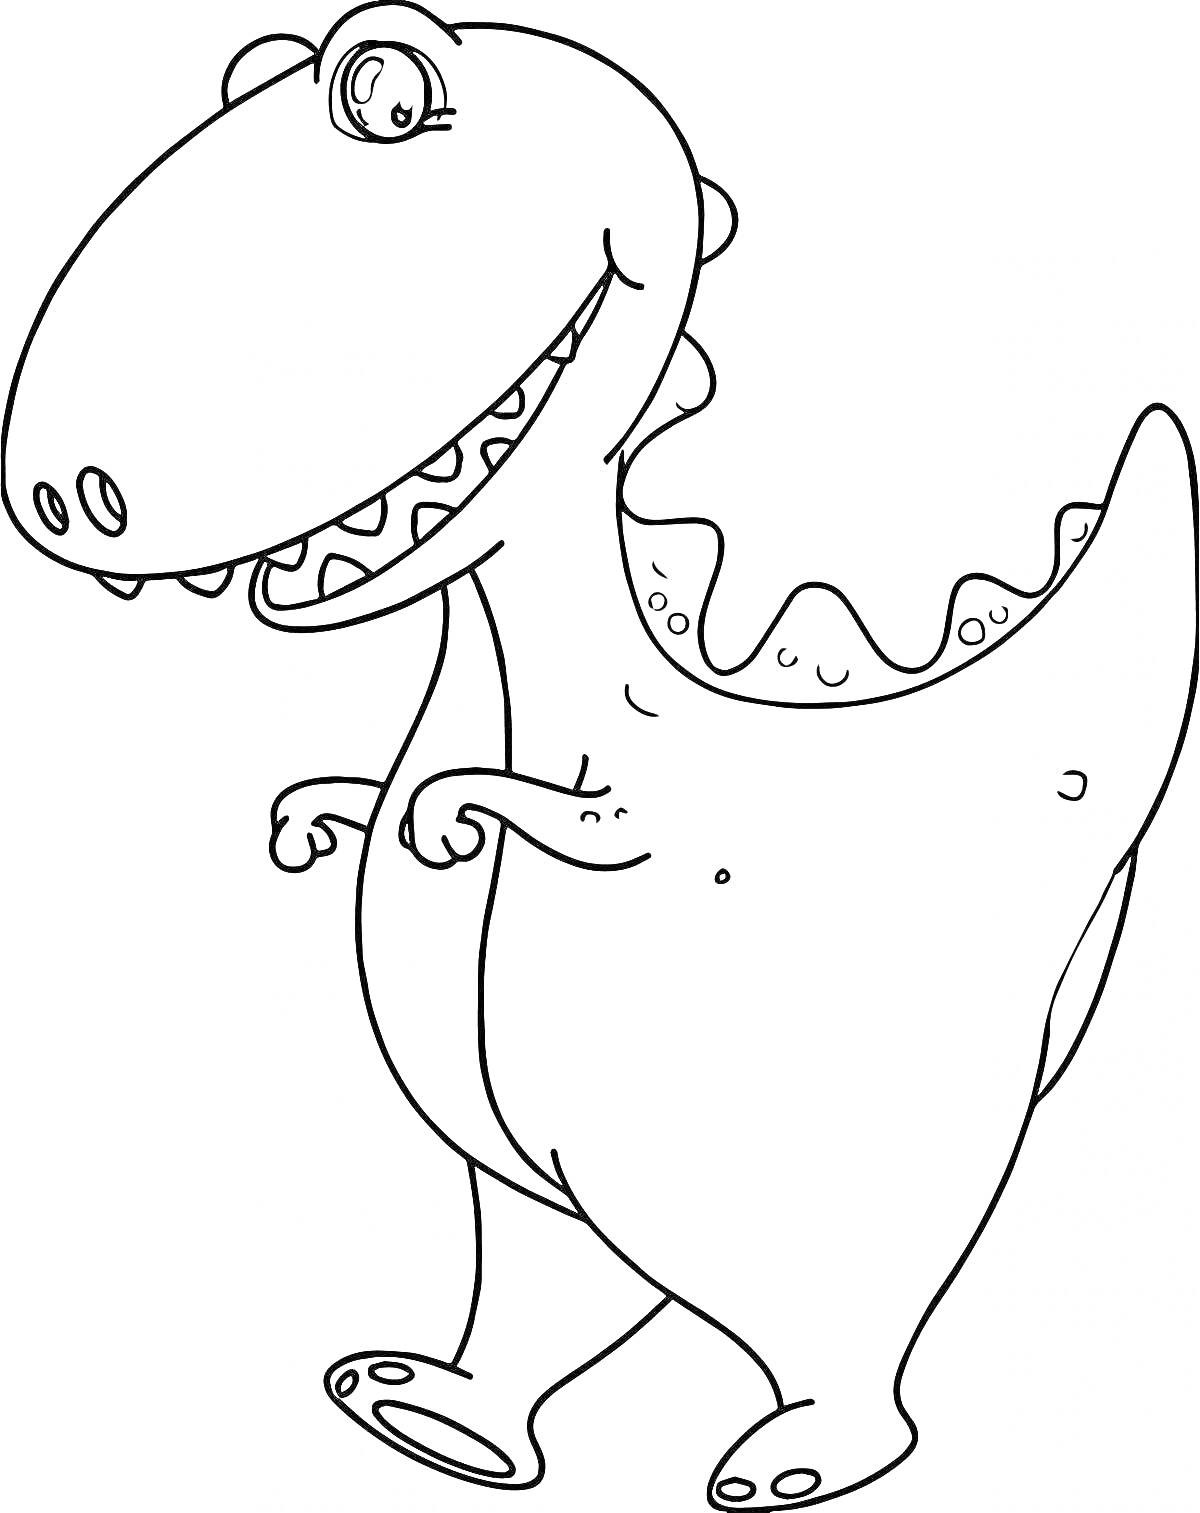 Раскраска Динозаврик с большими зубами и краткими лапками